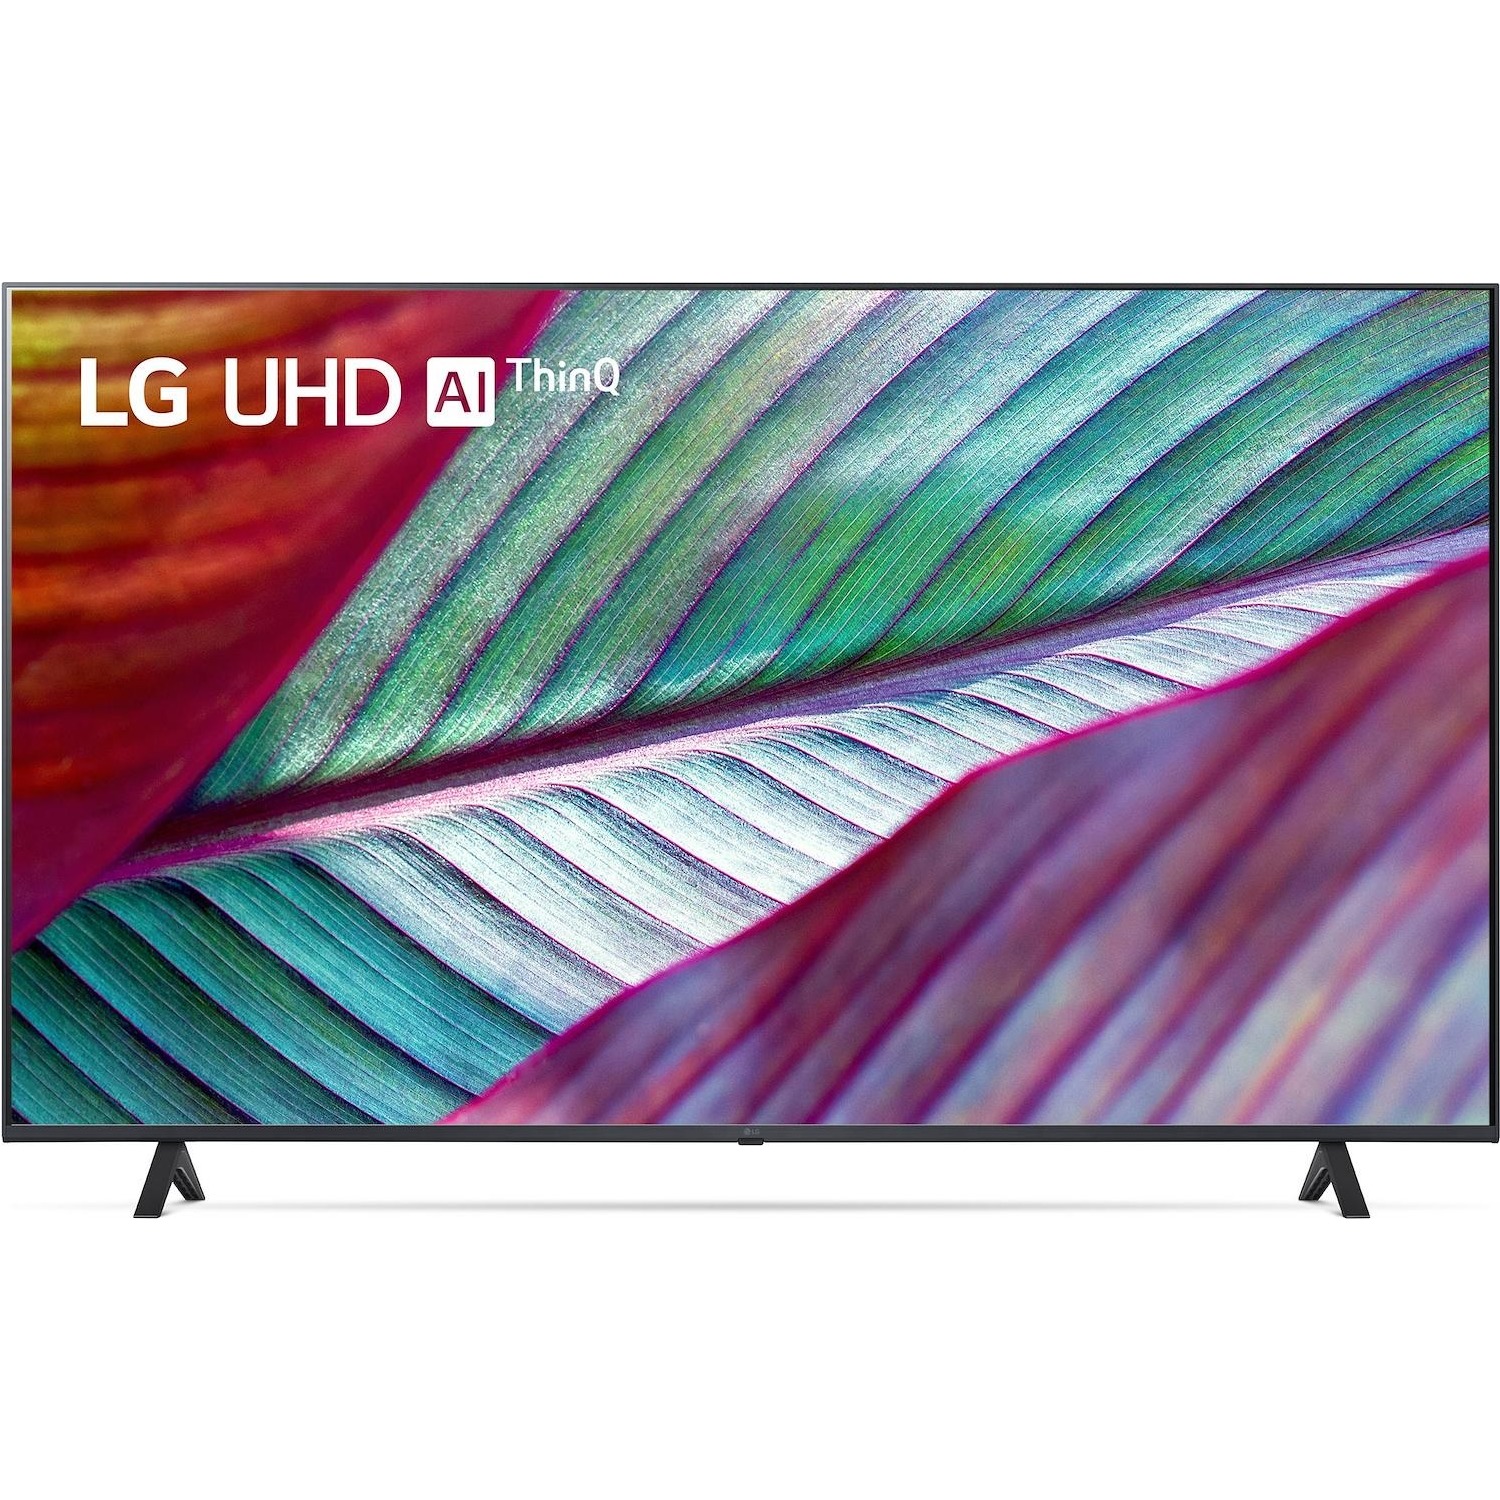 Immagine per TV LED LG 55UR78006 Smart 4K Ultra HD da DIMOStore